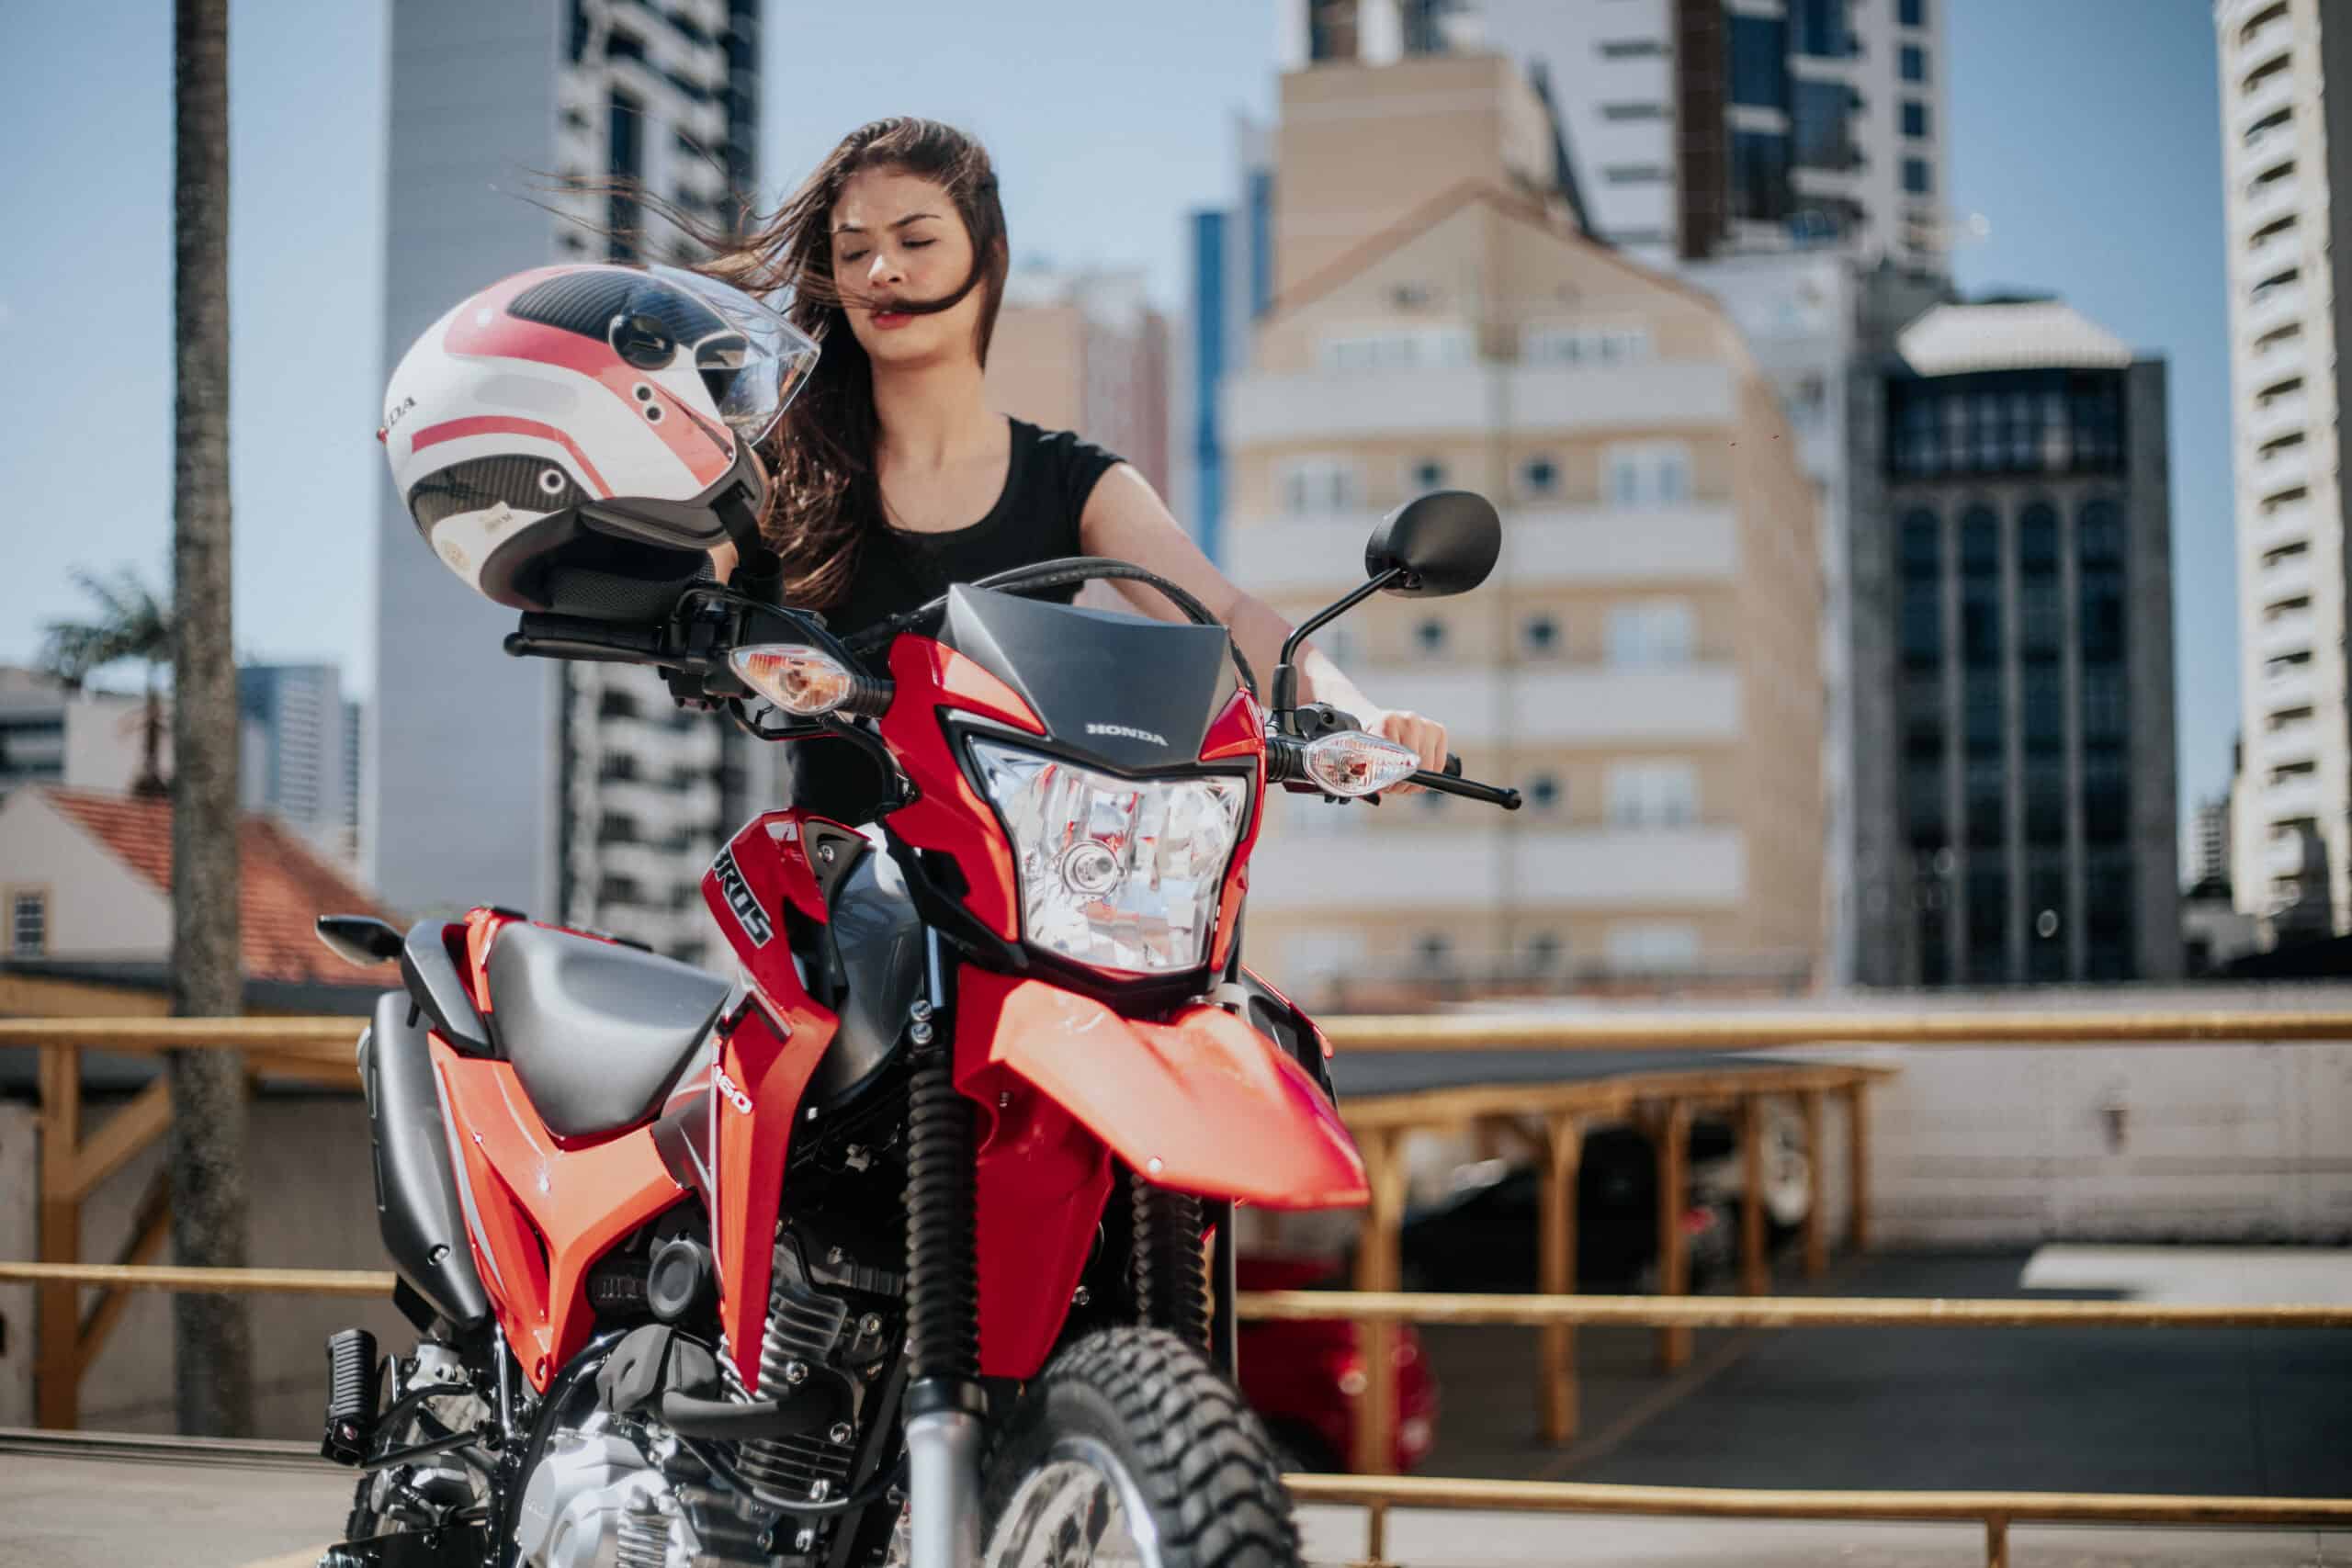 Mulher motociclista com um modelo da Honda